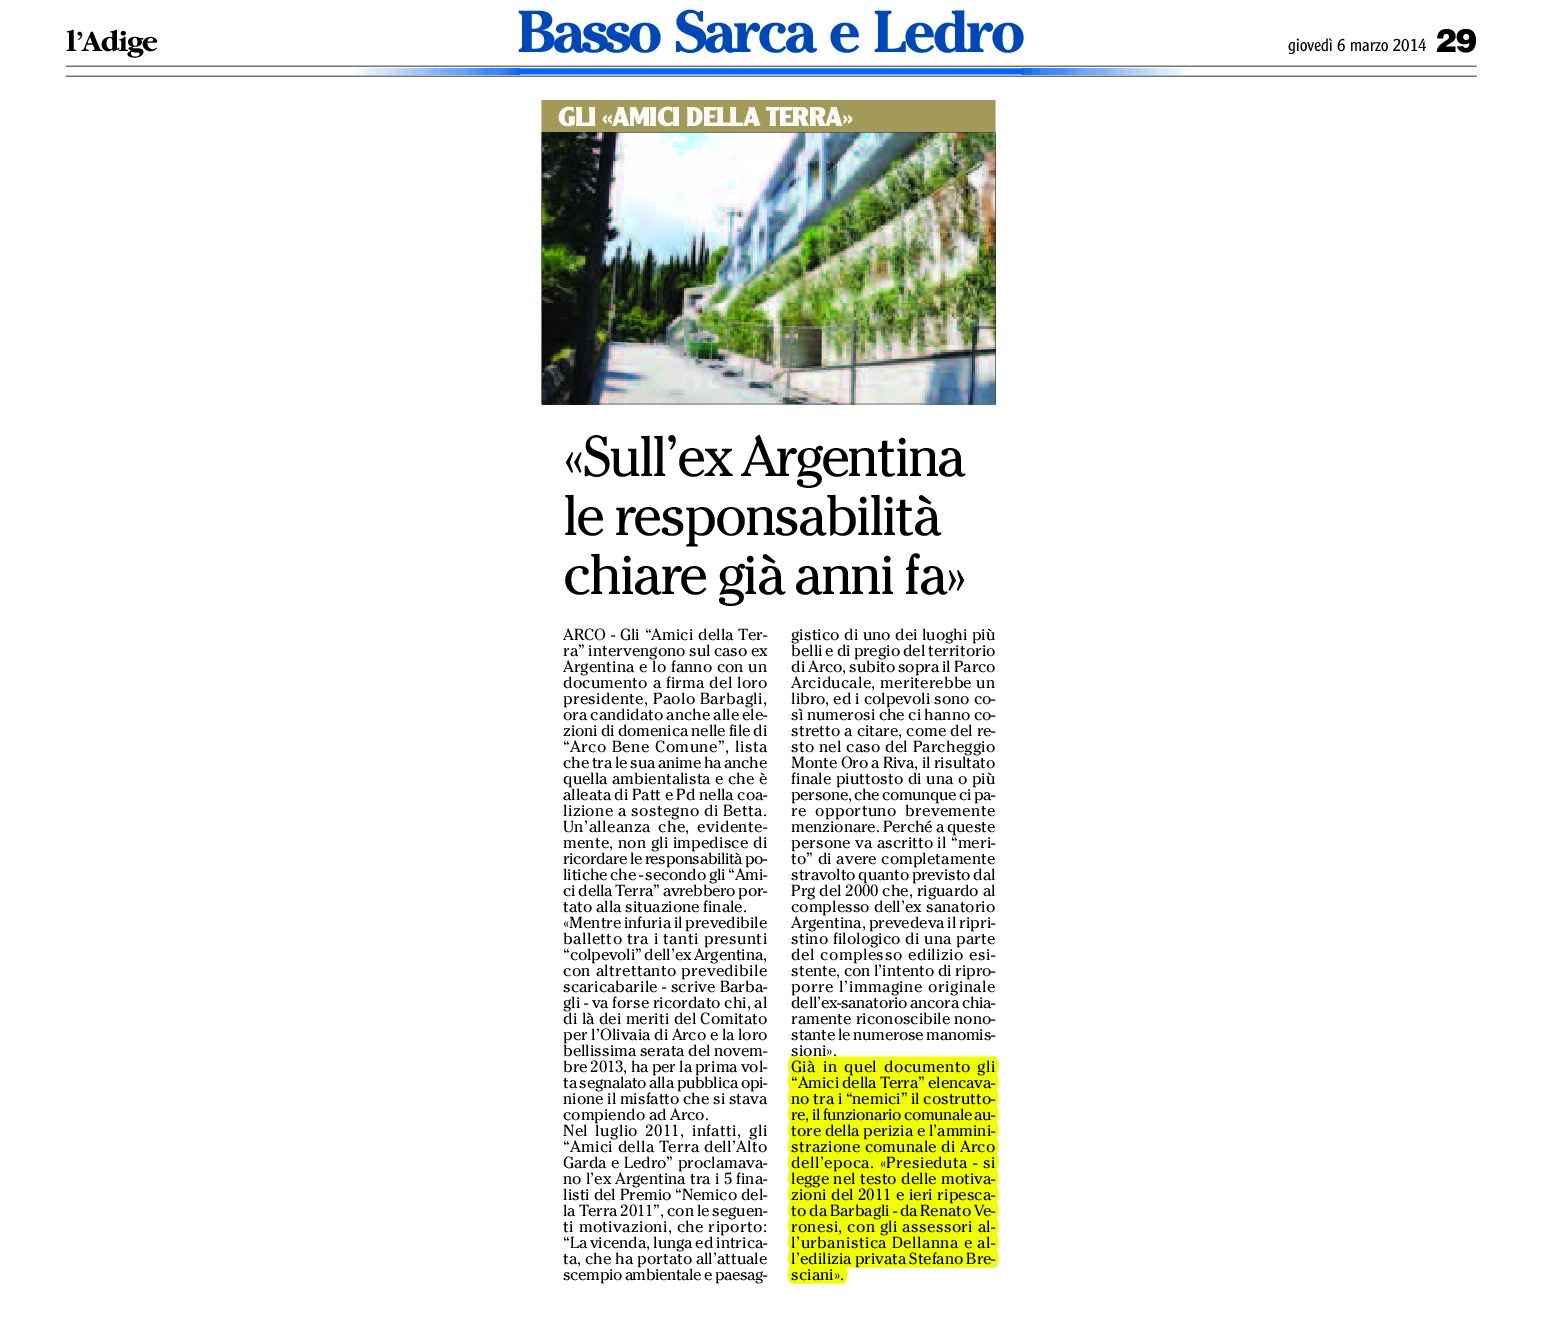 Arco: sull’ex Argentina le responsabilità chiare già anni fa